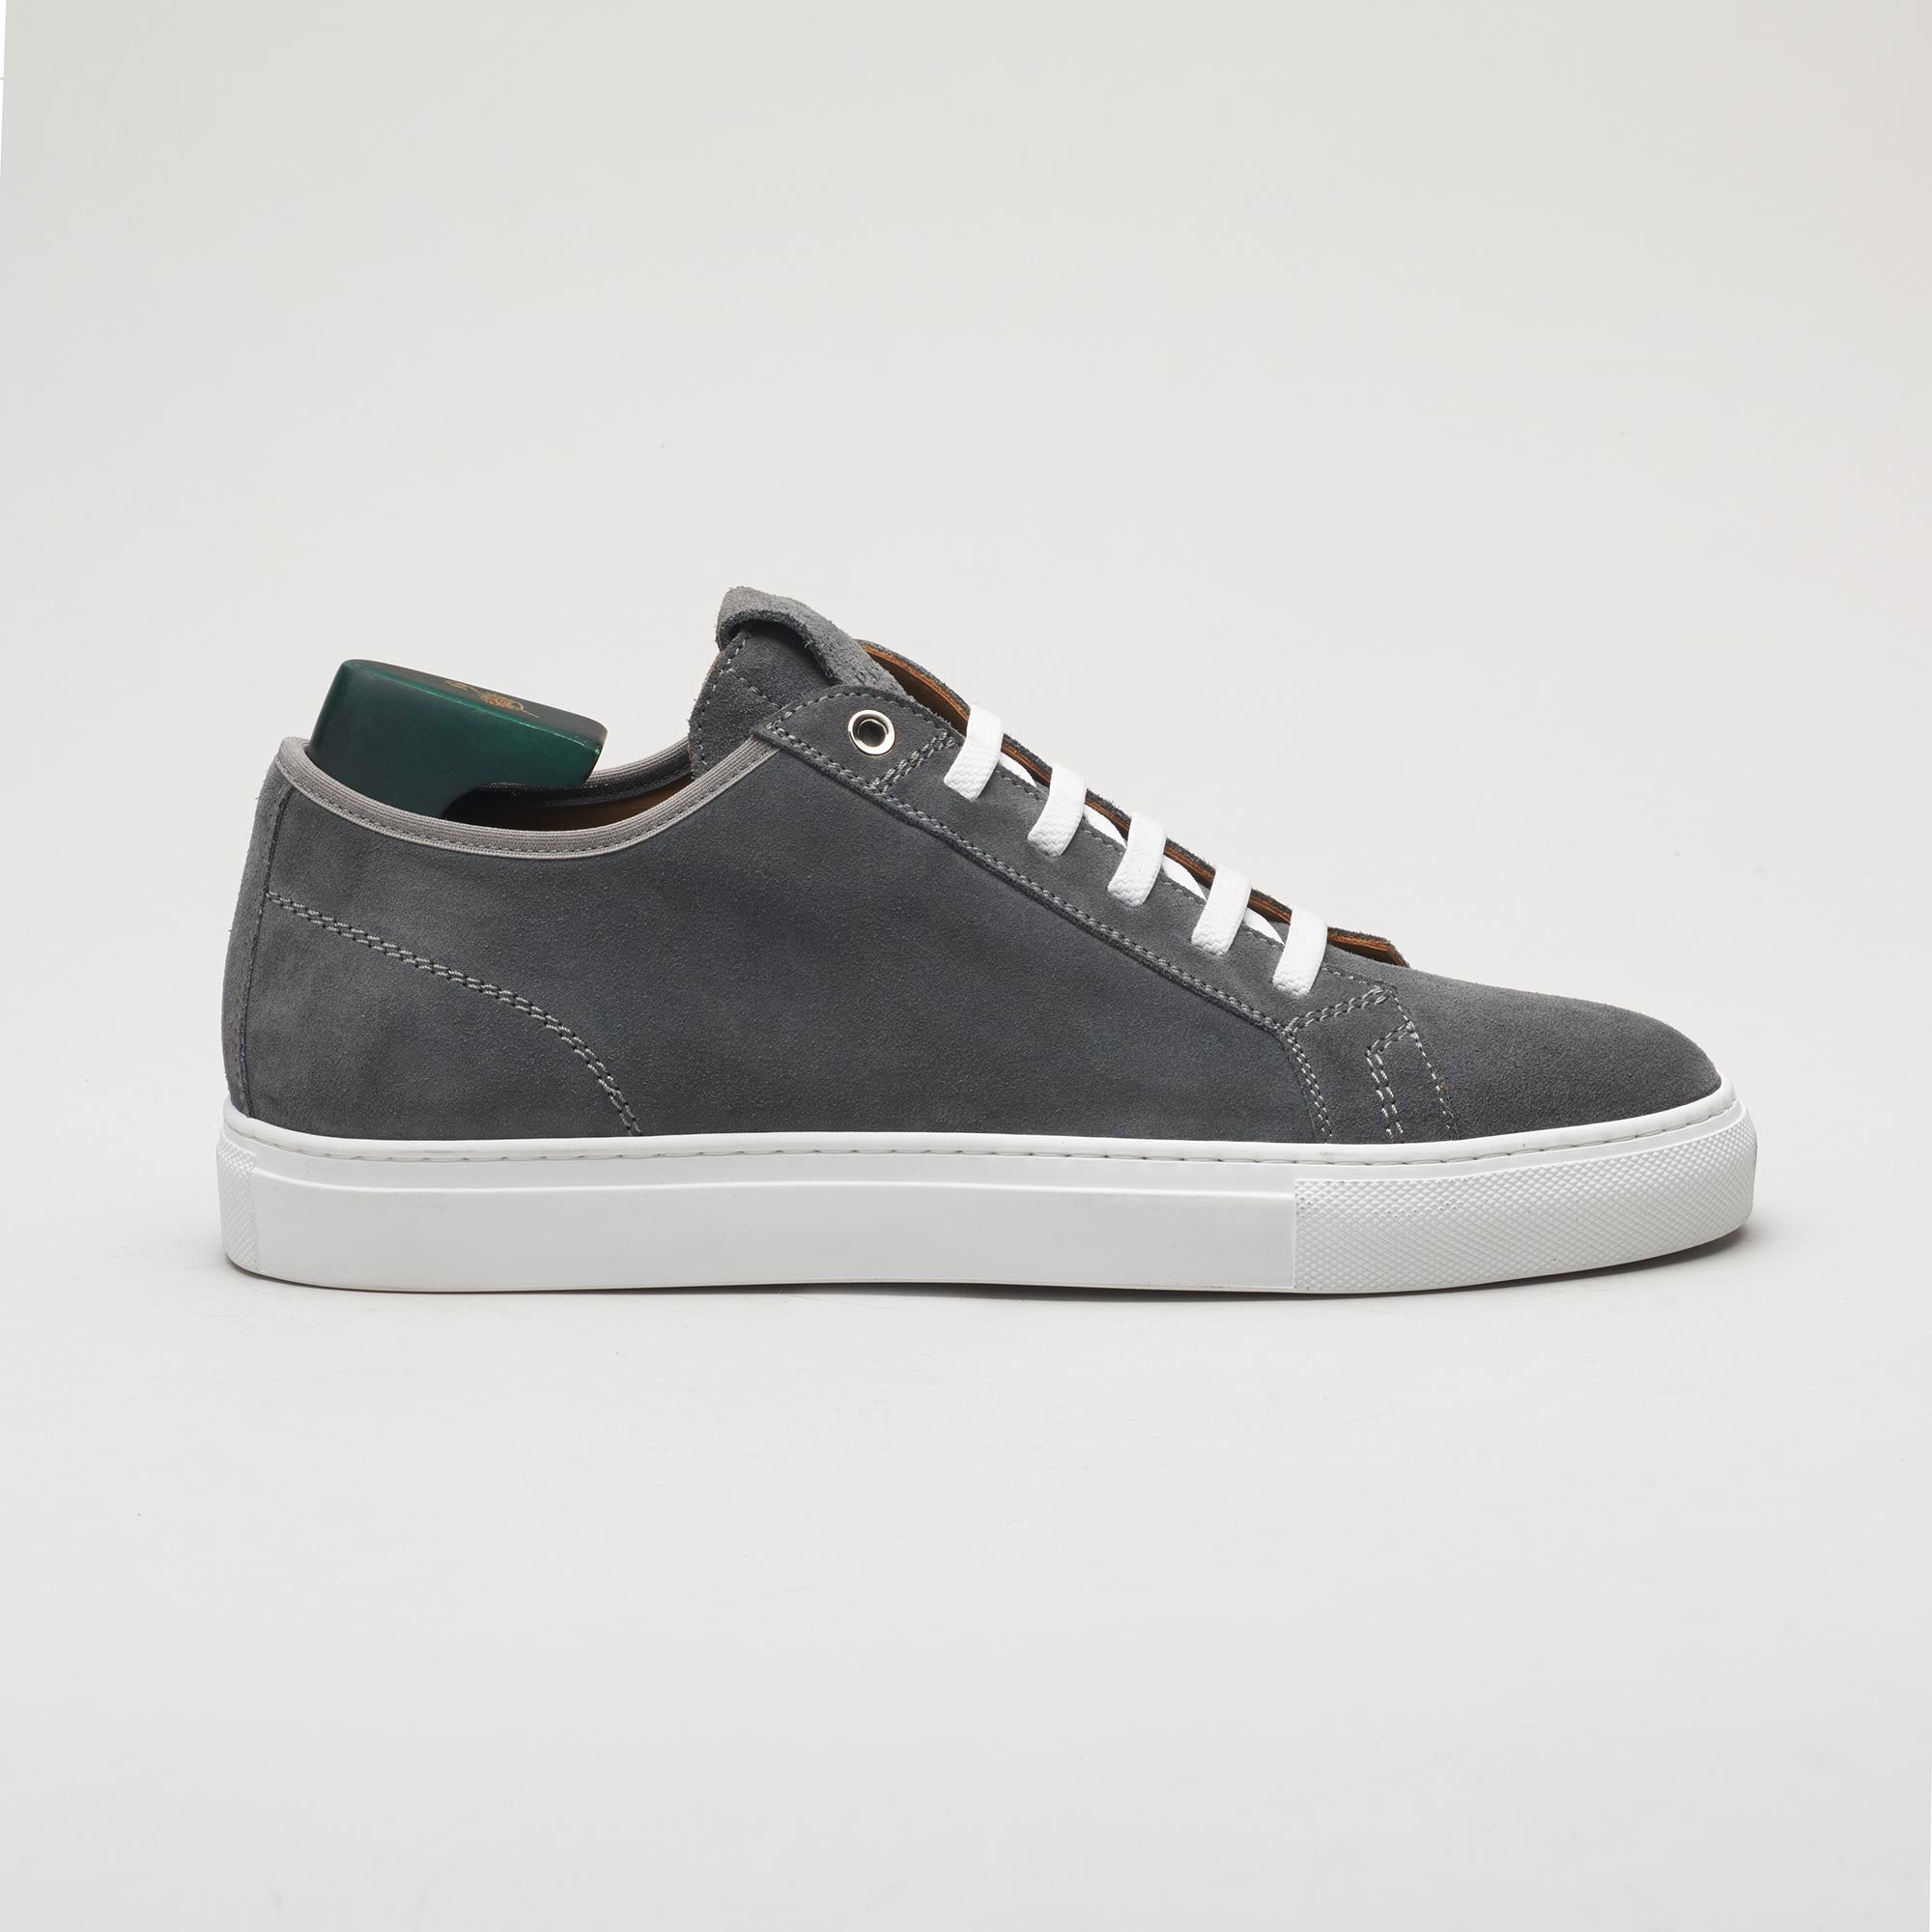 Men’s sneaker in suede grey, made in Italy, handmade